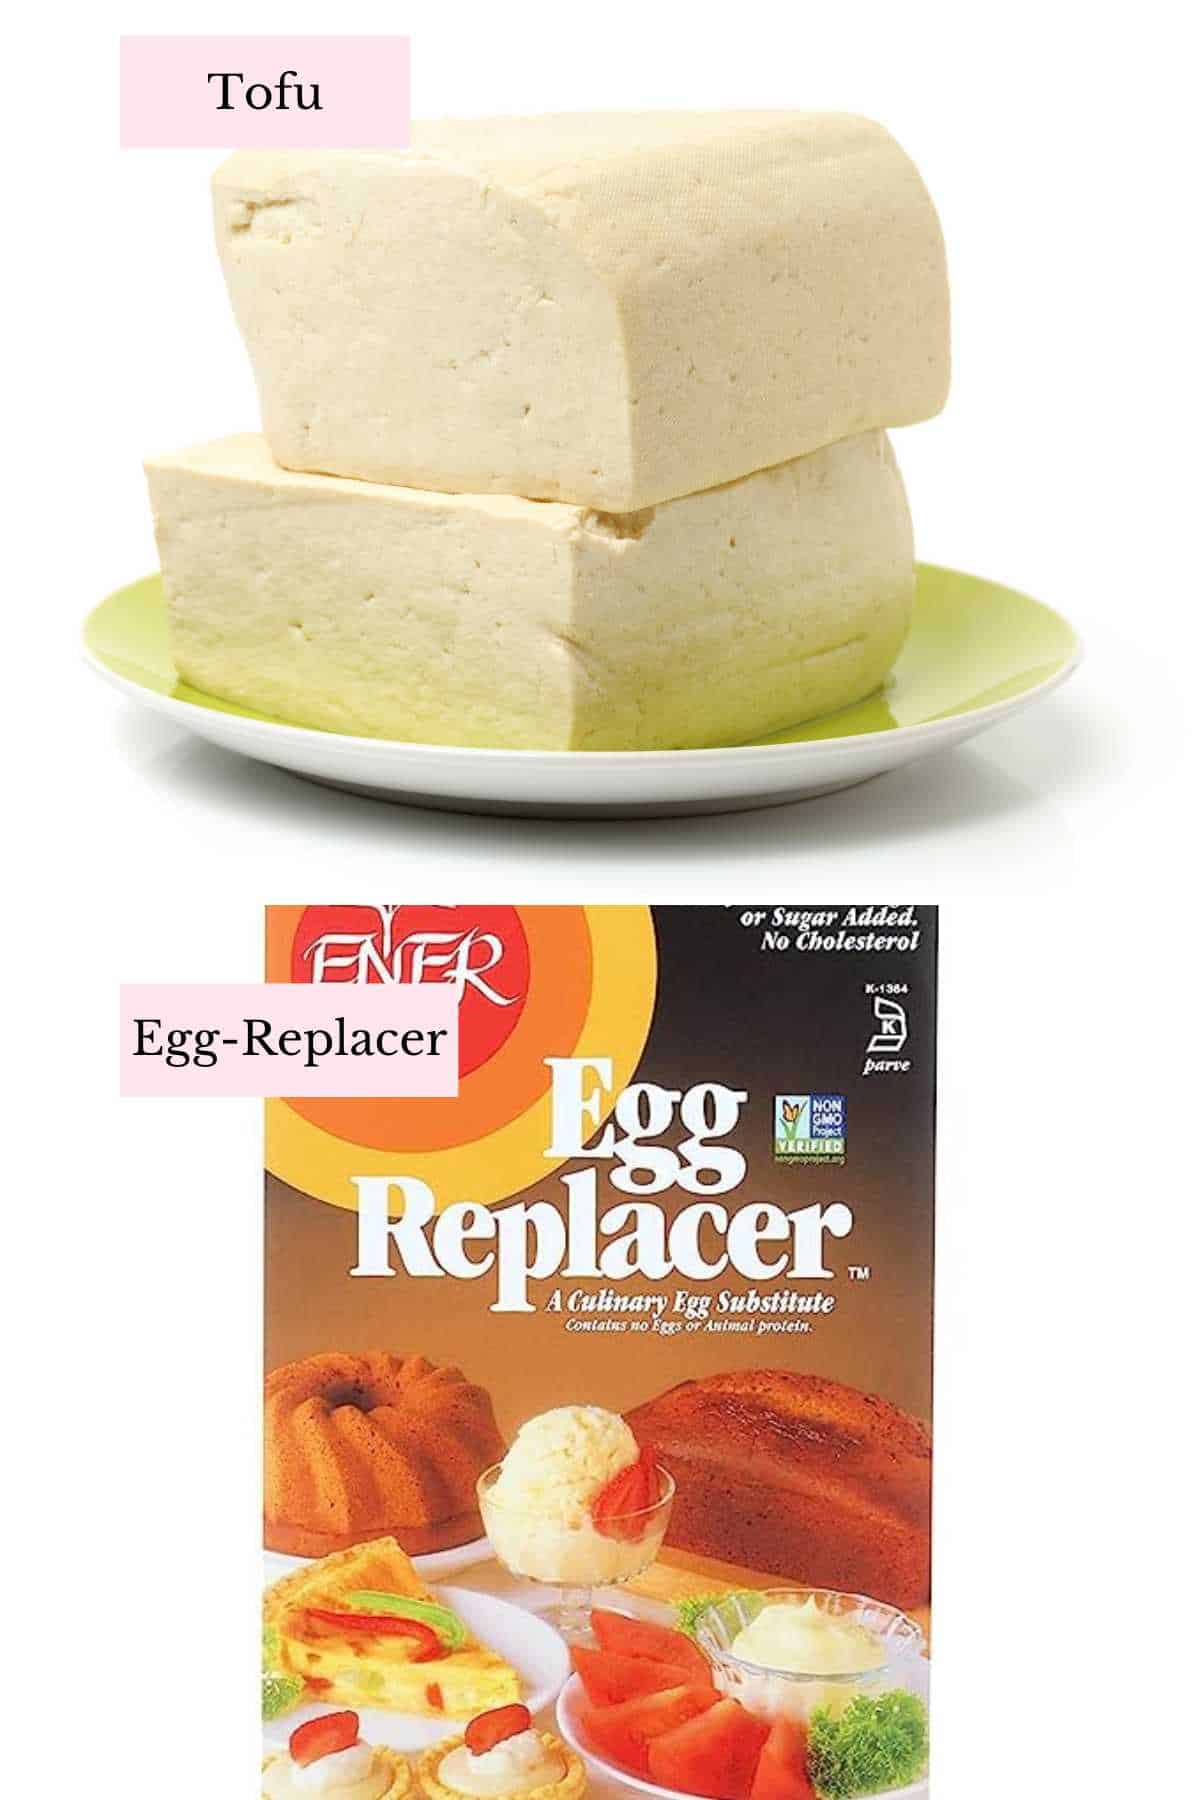 2 commercial vegan egg relacers for making banana bread